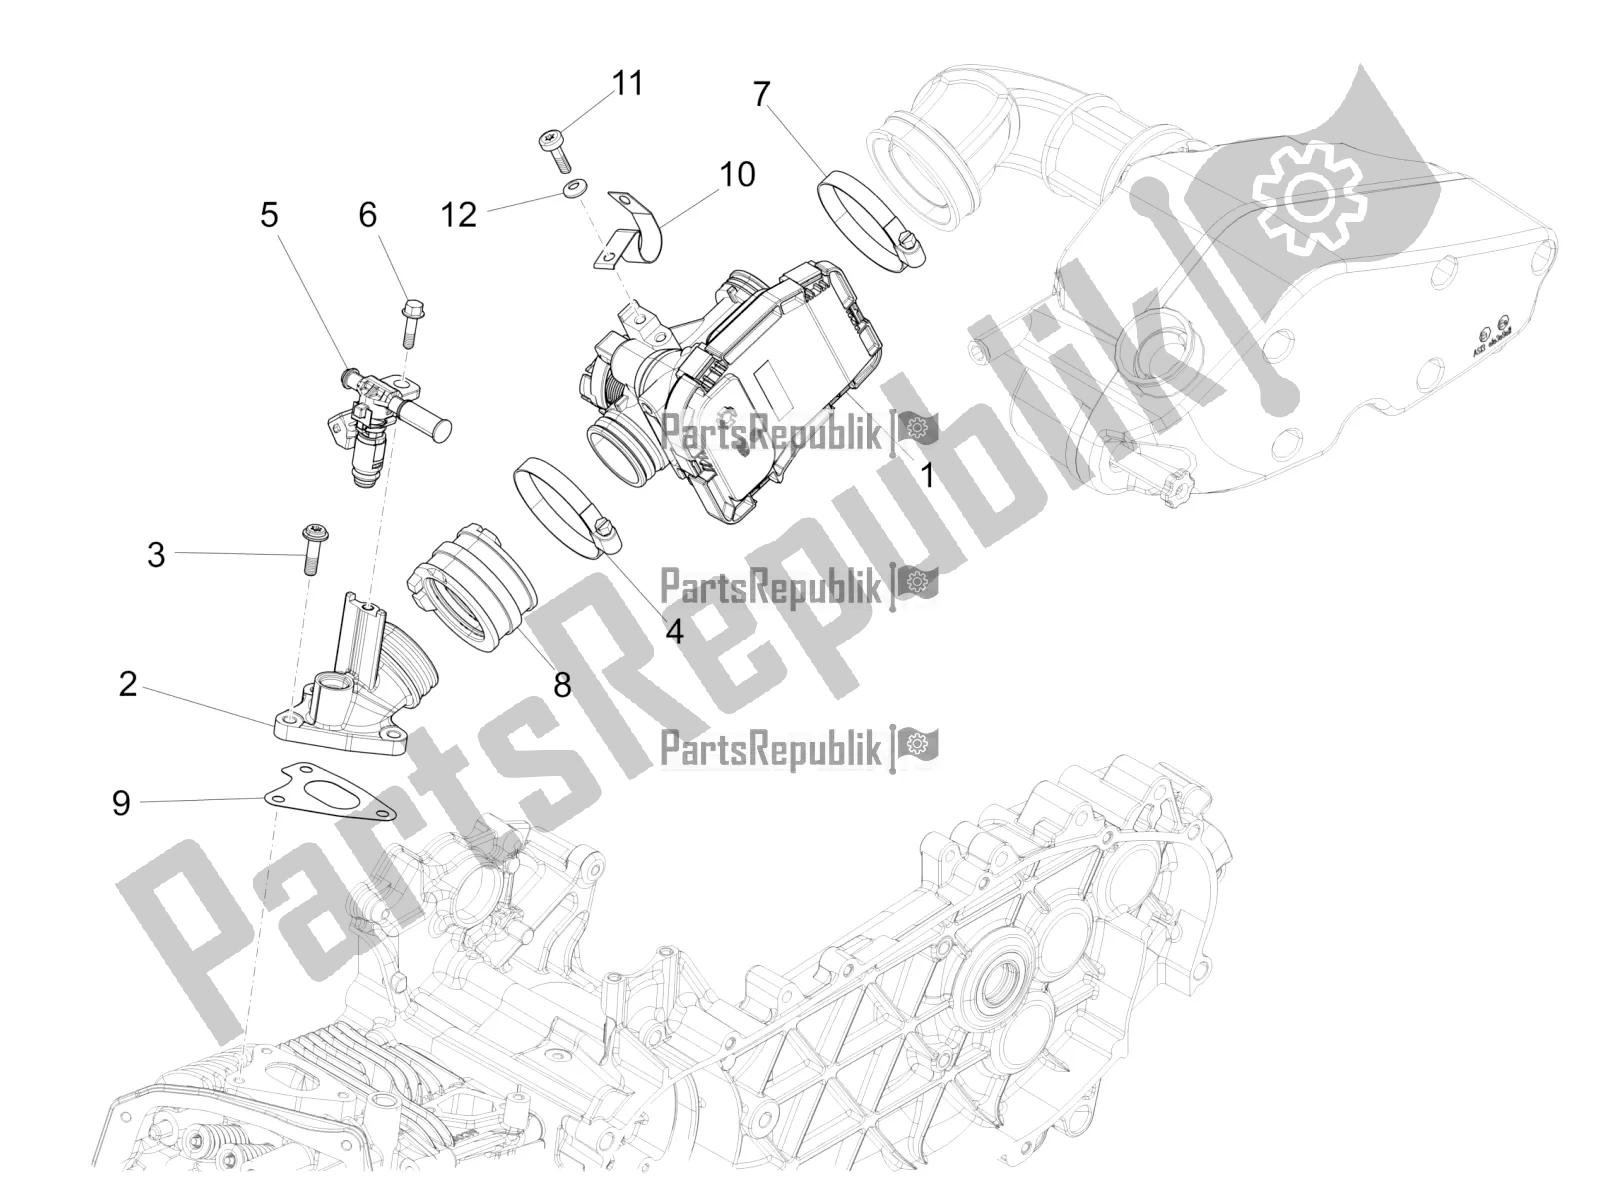 Toutes les pièces pour le Throttle Body - Injector - Induction Joint du Vespa 946 125 4 STR / Red 2020